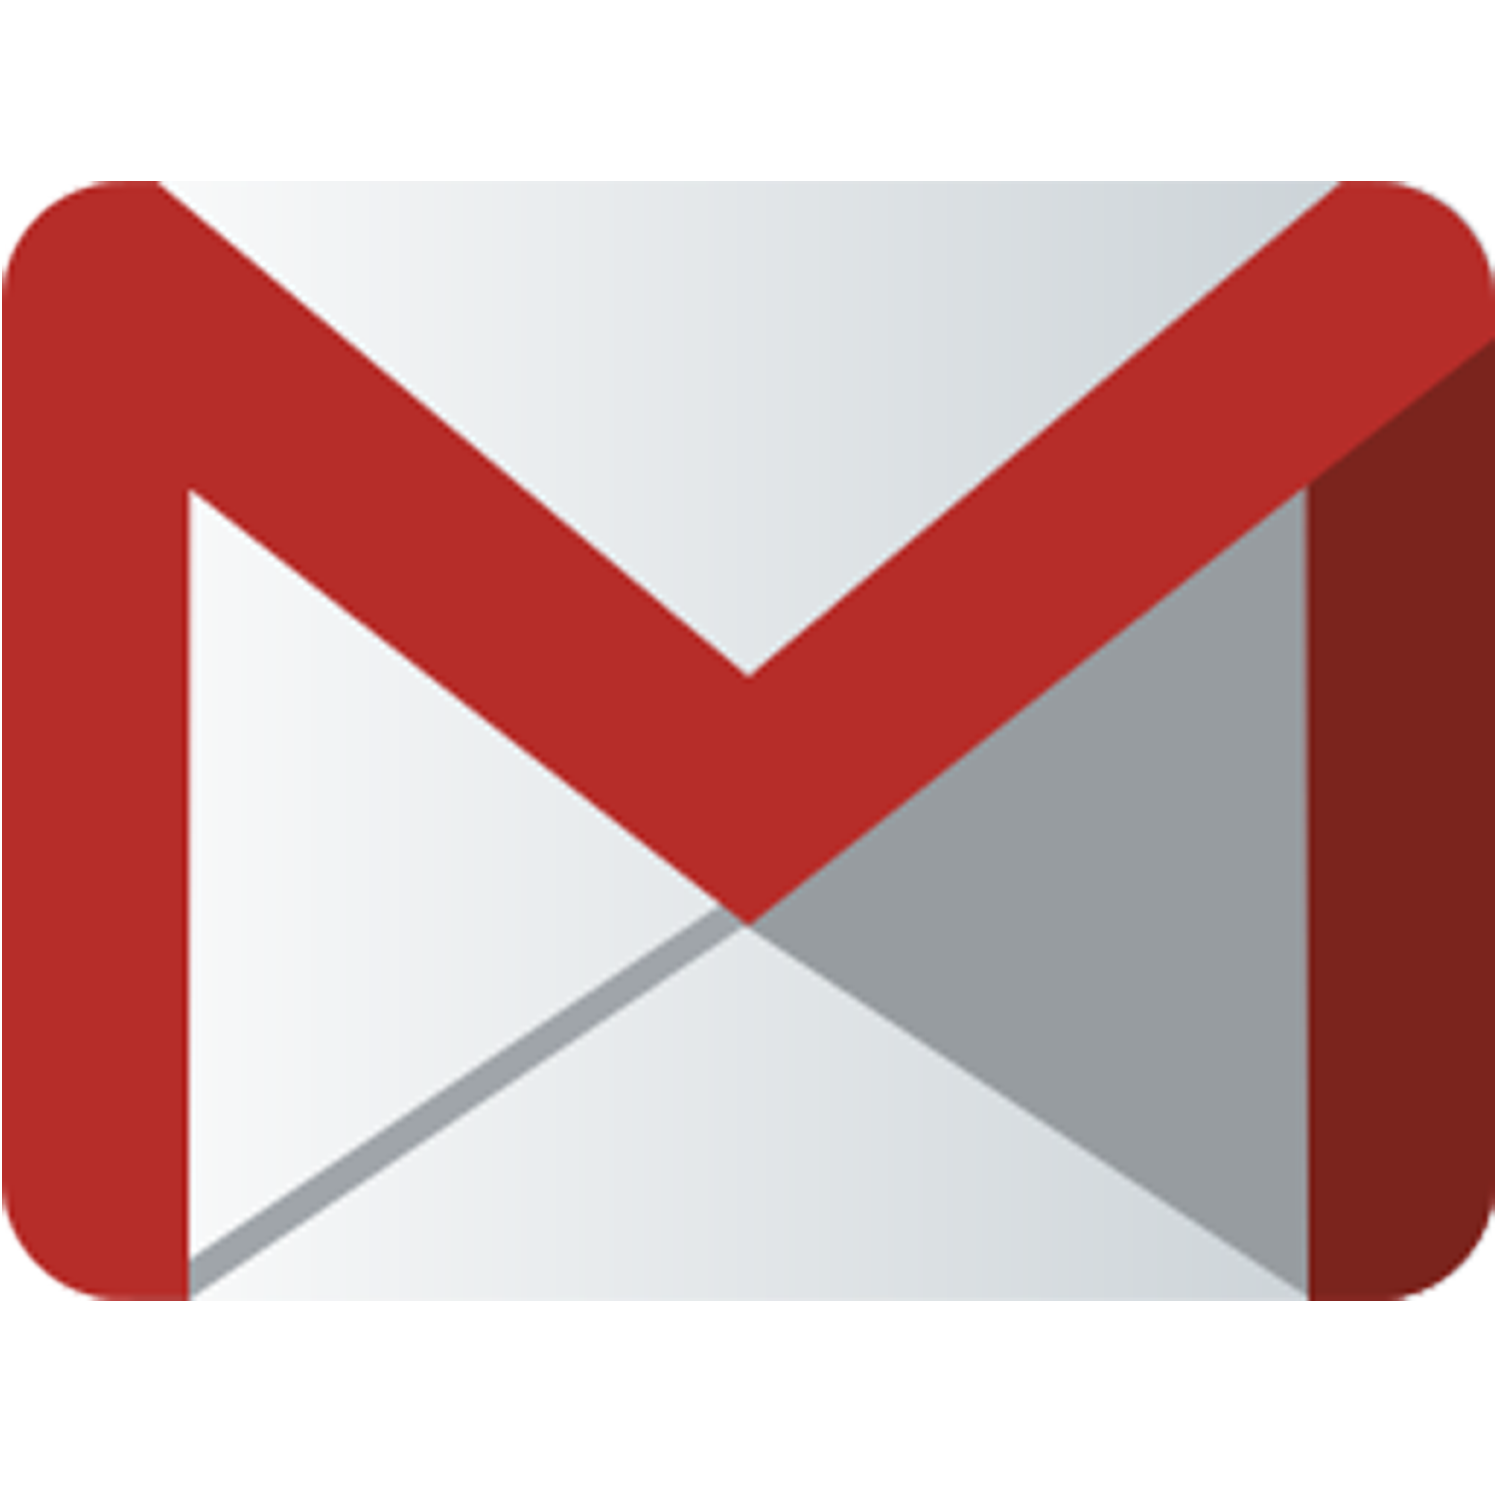 Gmail f f. Gmail почта. Значок почты. Иконка почты gmail. Gmail логотип PNG.